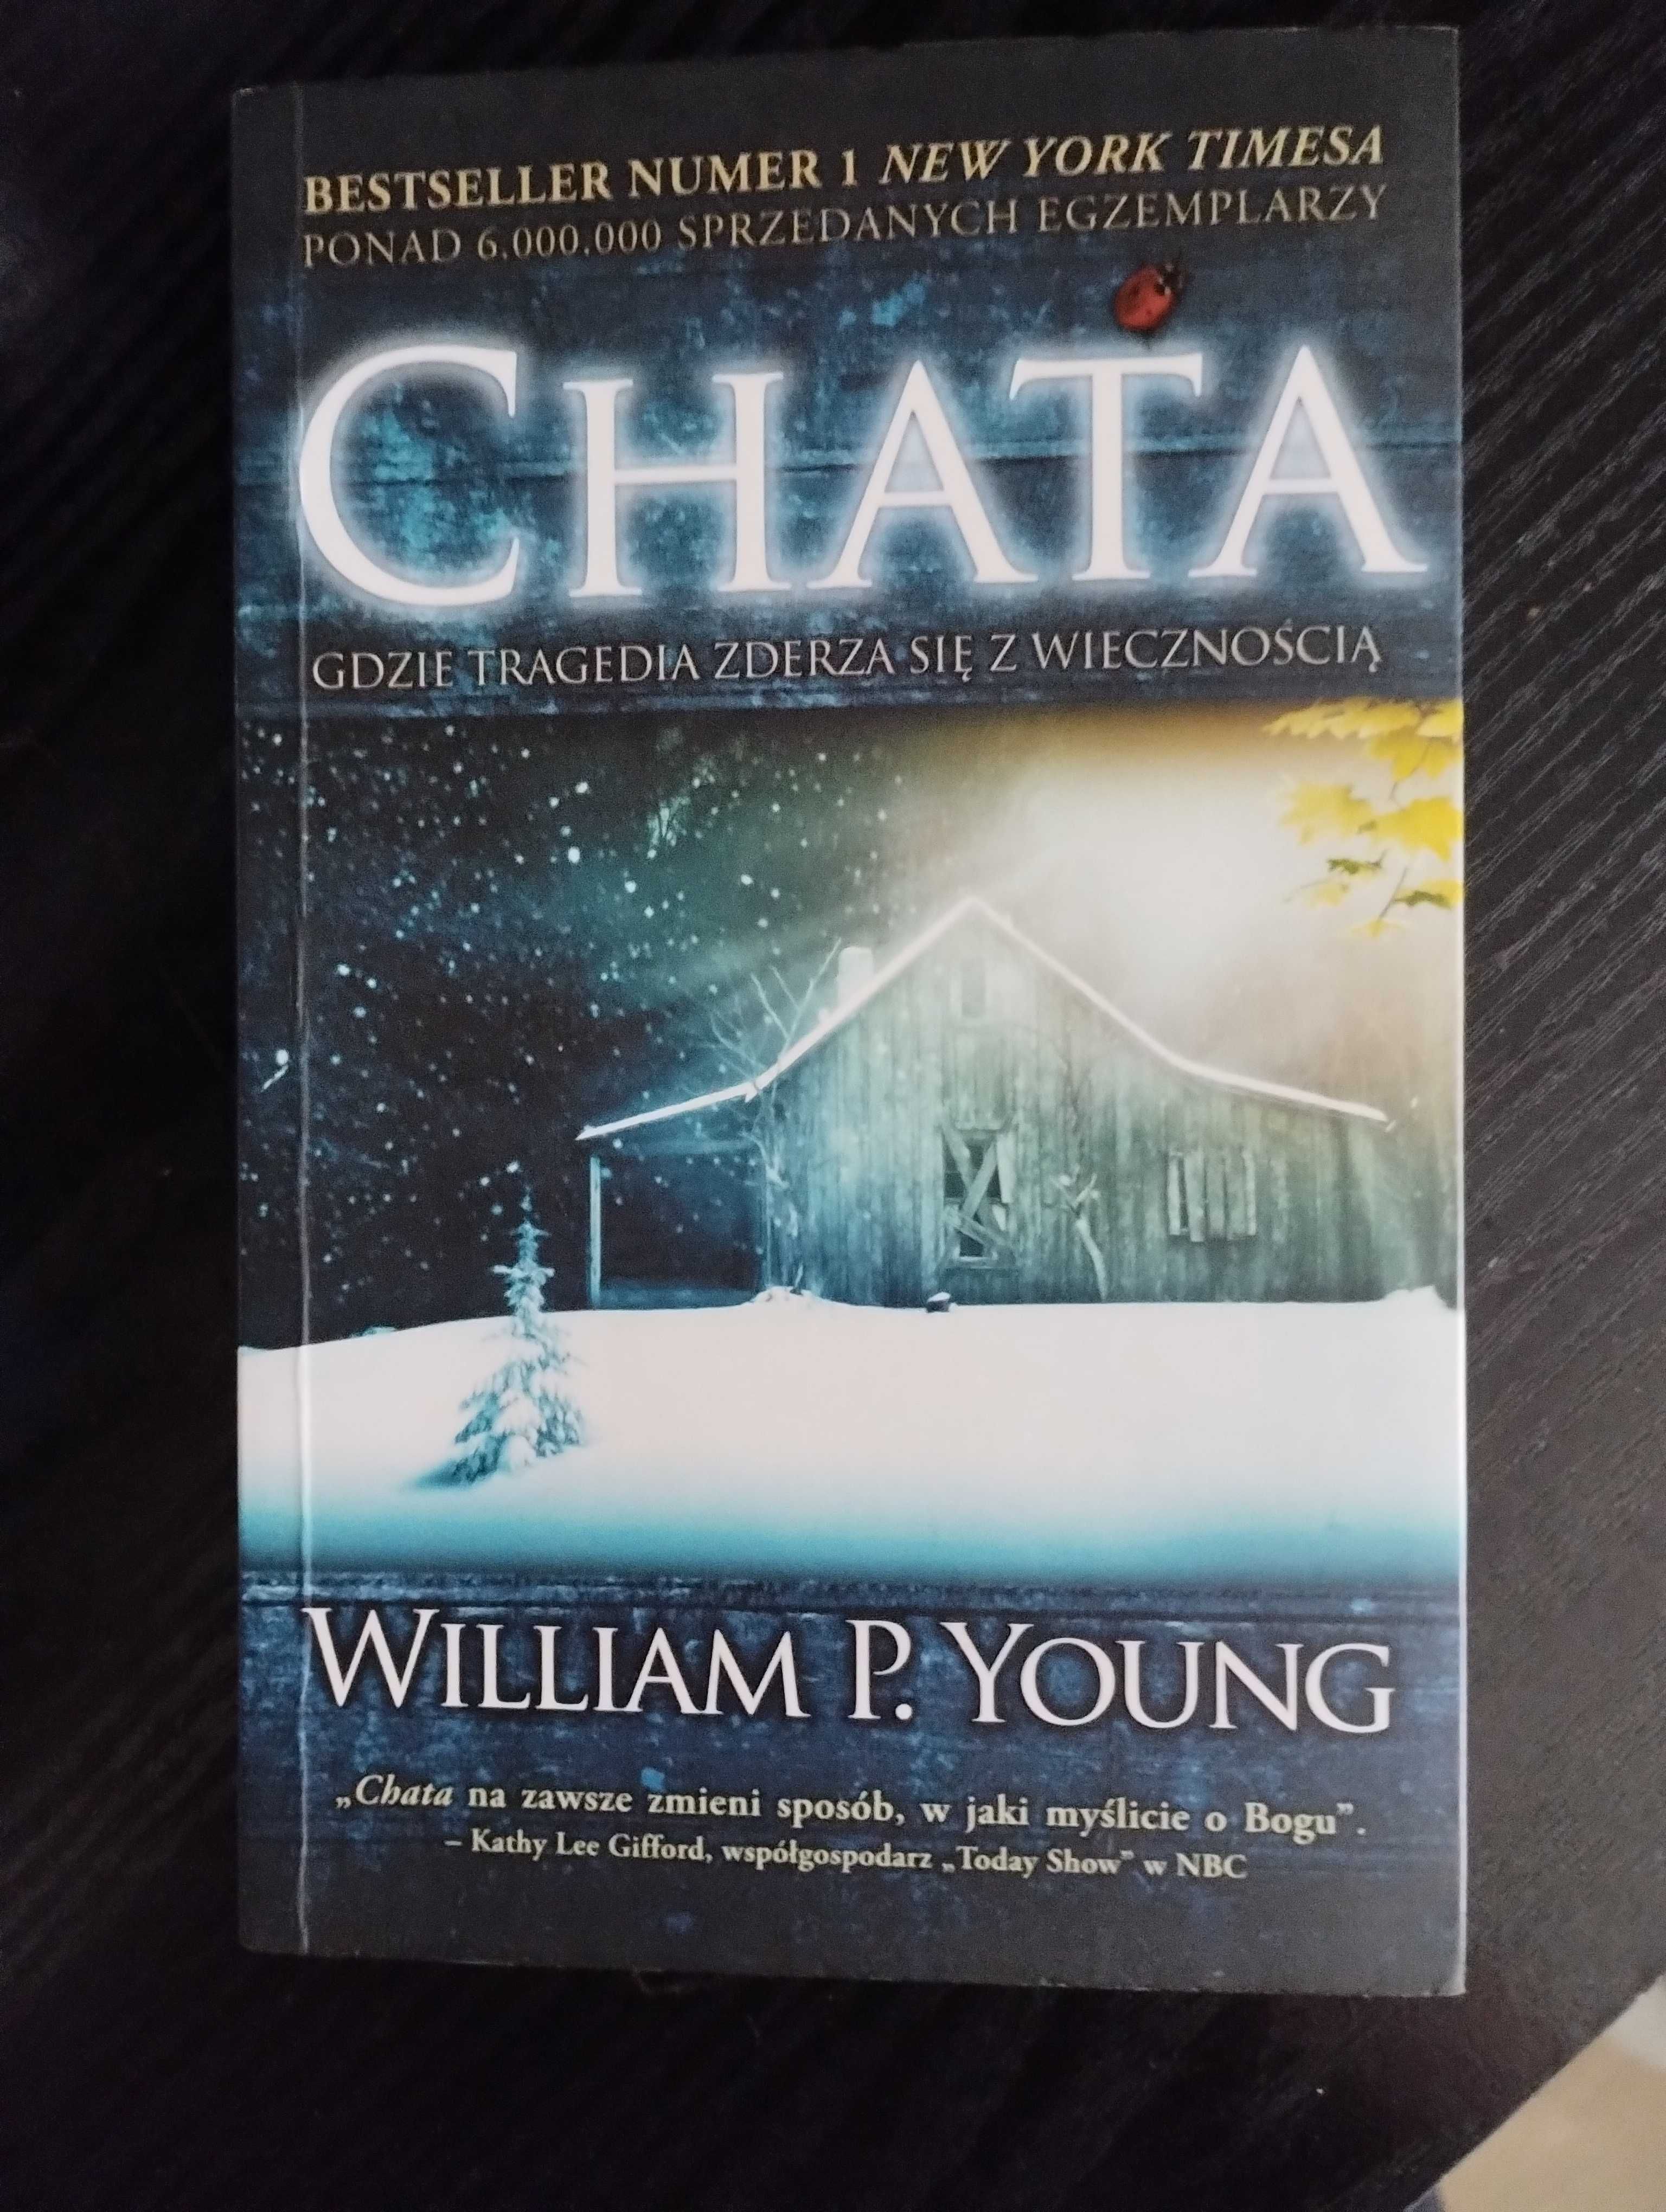 Książka  "Chata"